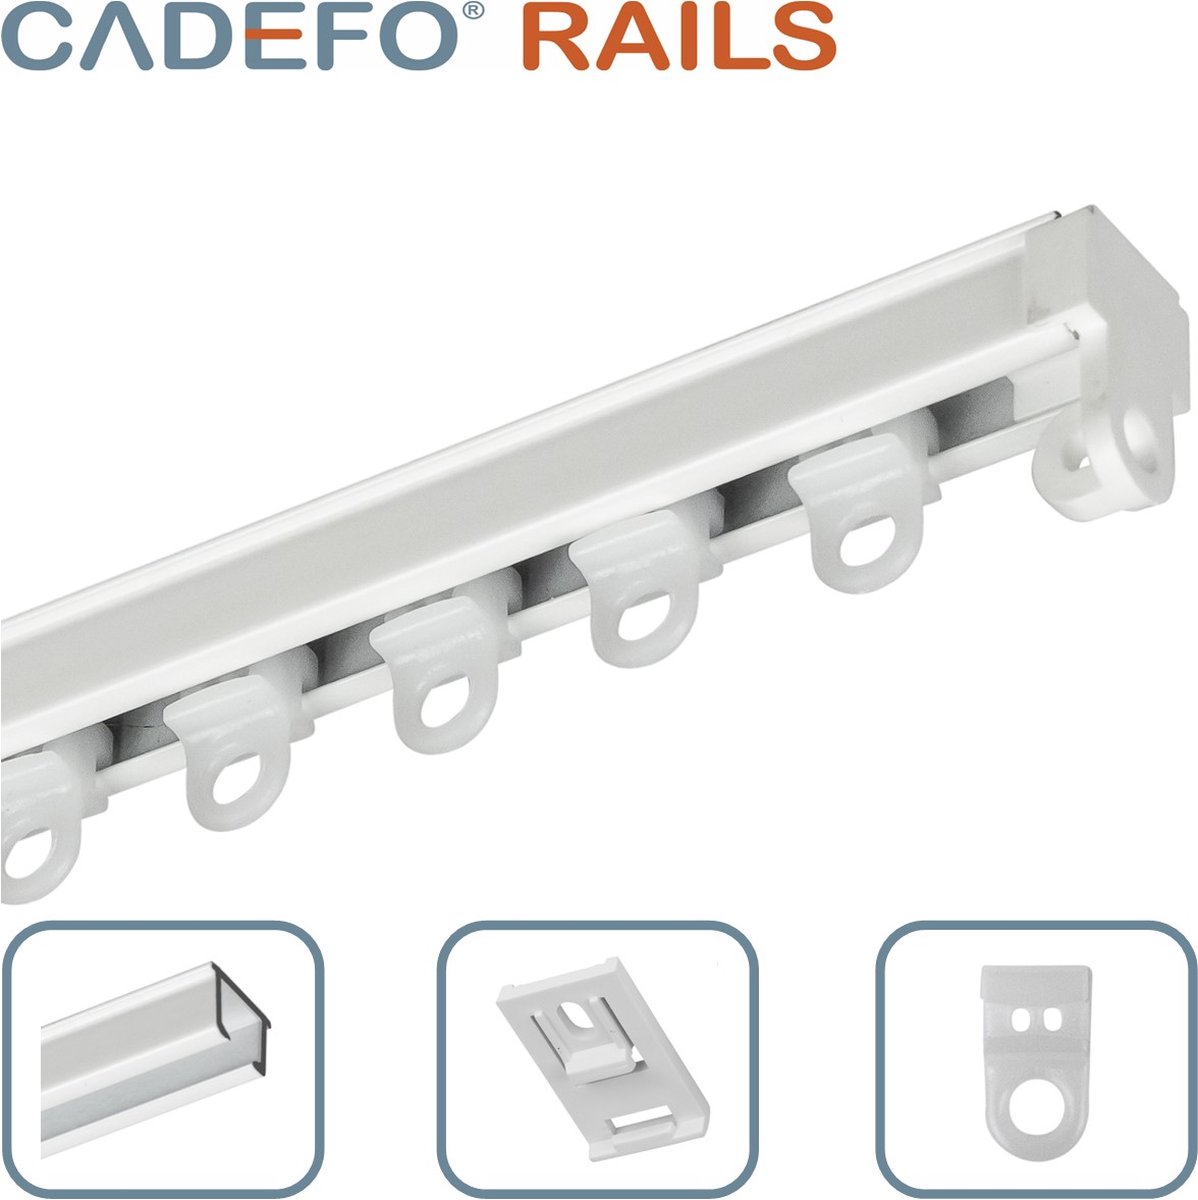 CADEFO RAILS (501 - 550 cm) Gordijnrails - Compleet op maat! - UIT 1 STUK - Leverbaar tot 6 meter - Plafondbevestiging - Lengte 542 cm